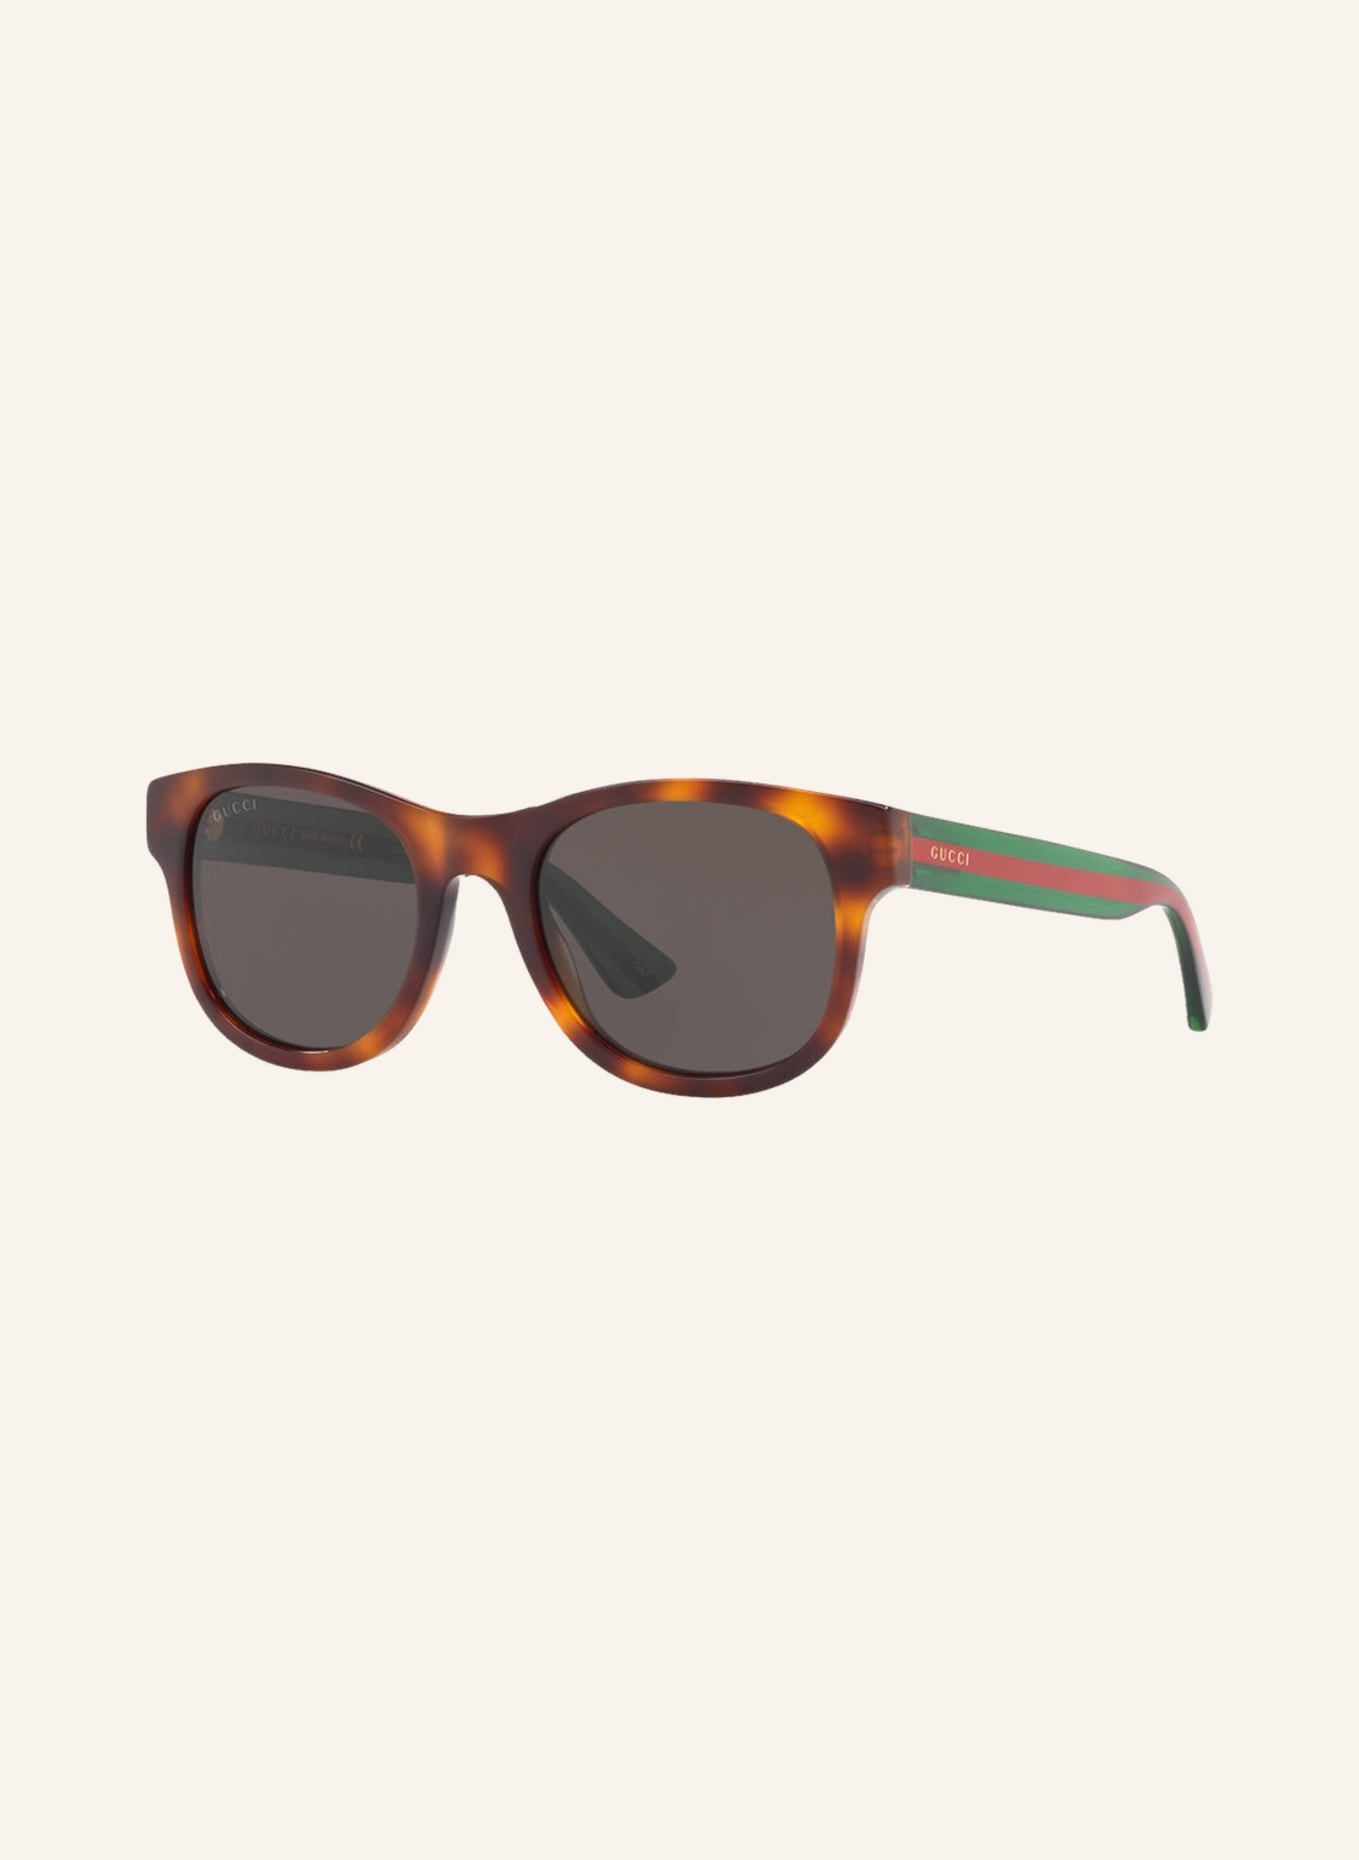 GUCCI Sunglasses GC000967, Color: 4402L1 – HAVANA/GRAY (Image 1)